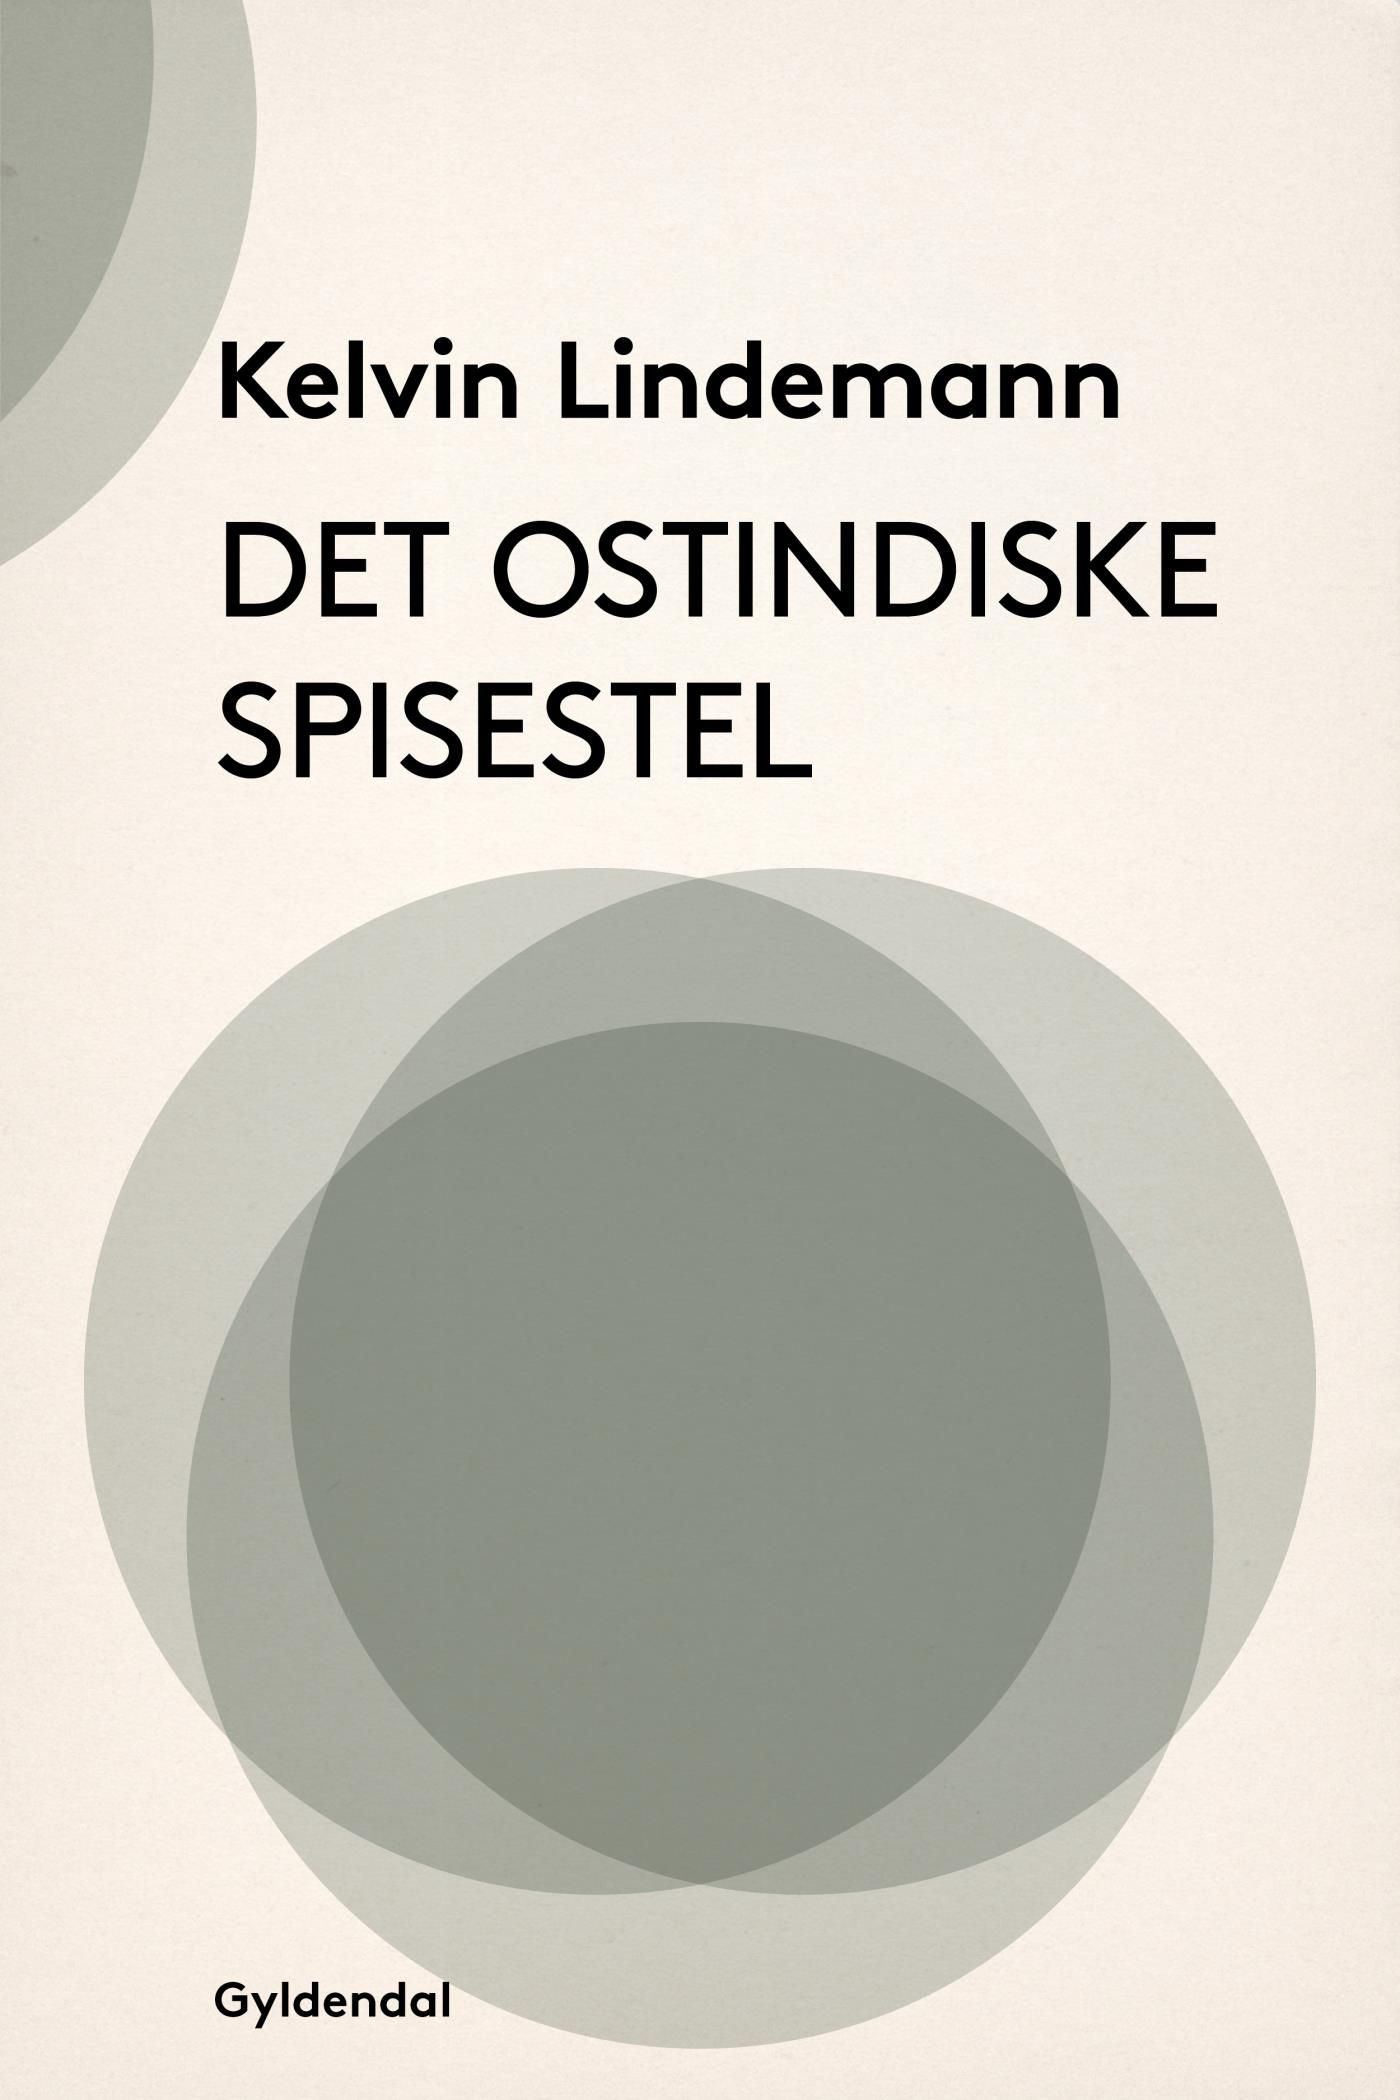 Det ostindiske spisestel, e-bog af Kelvin Lindemann